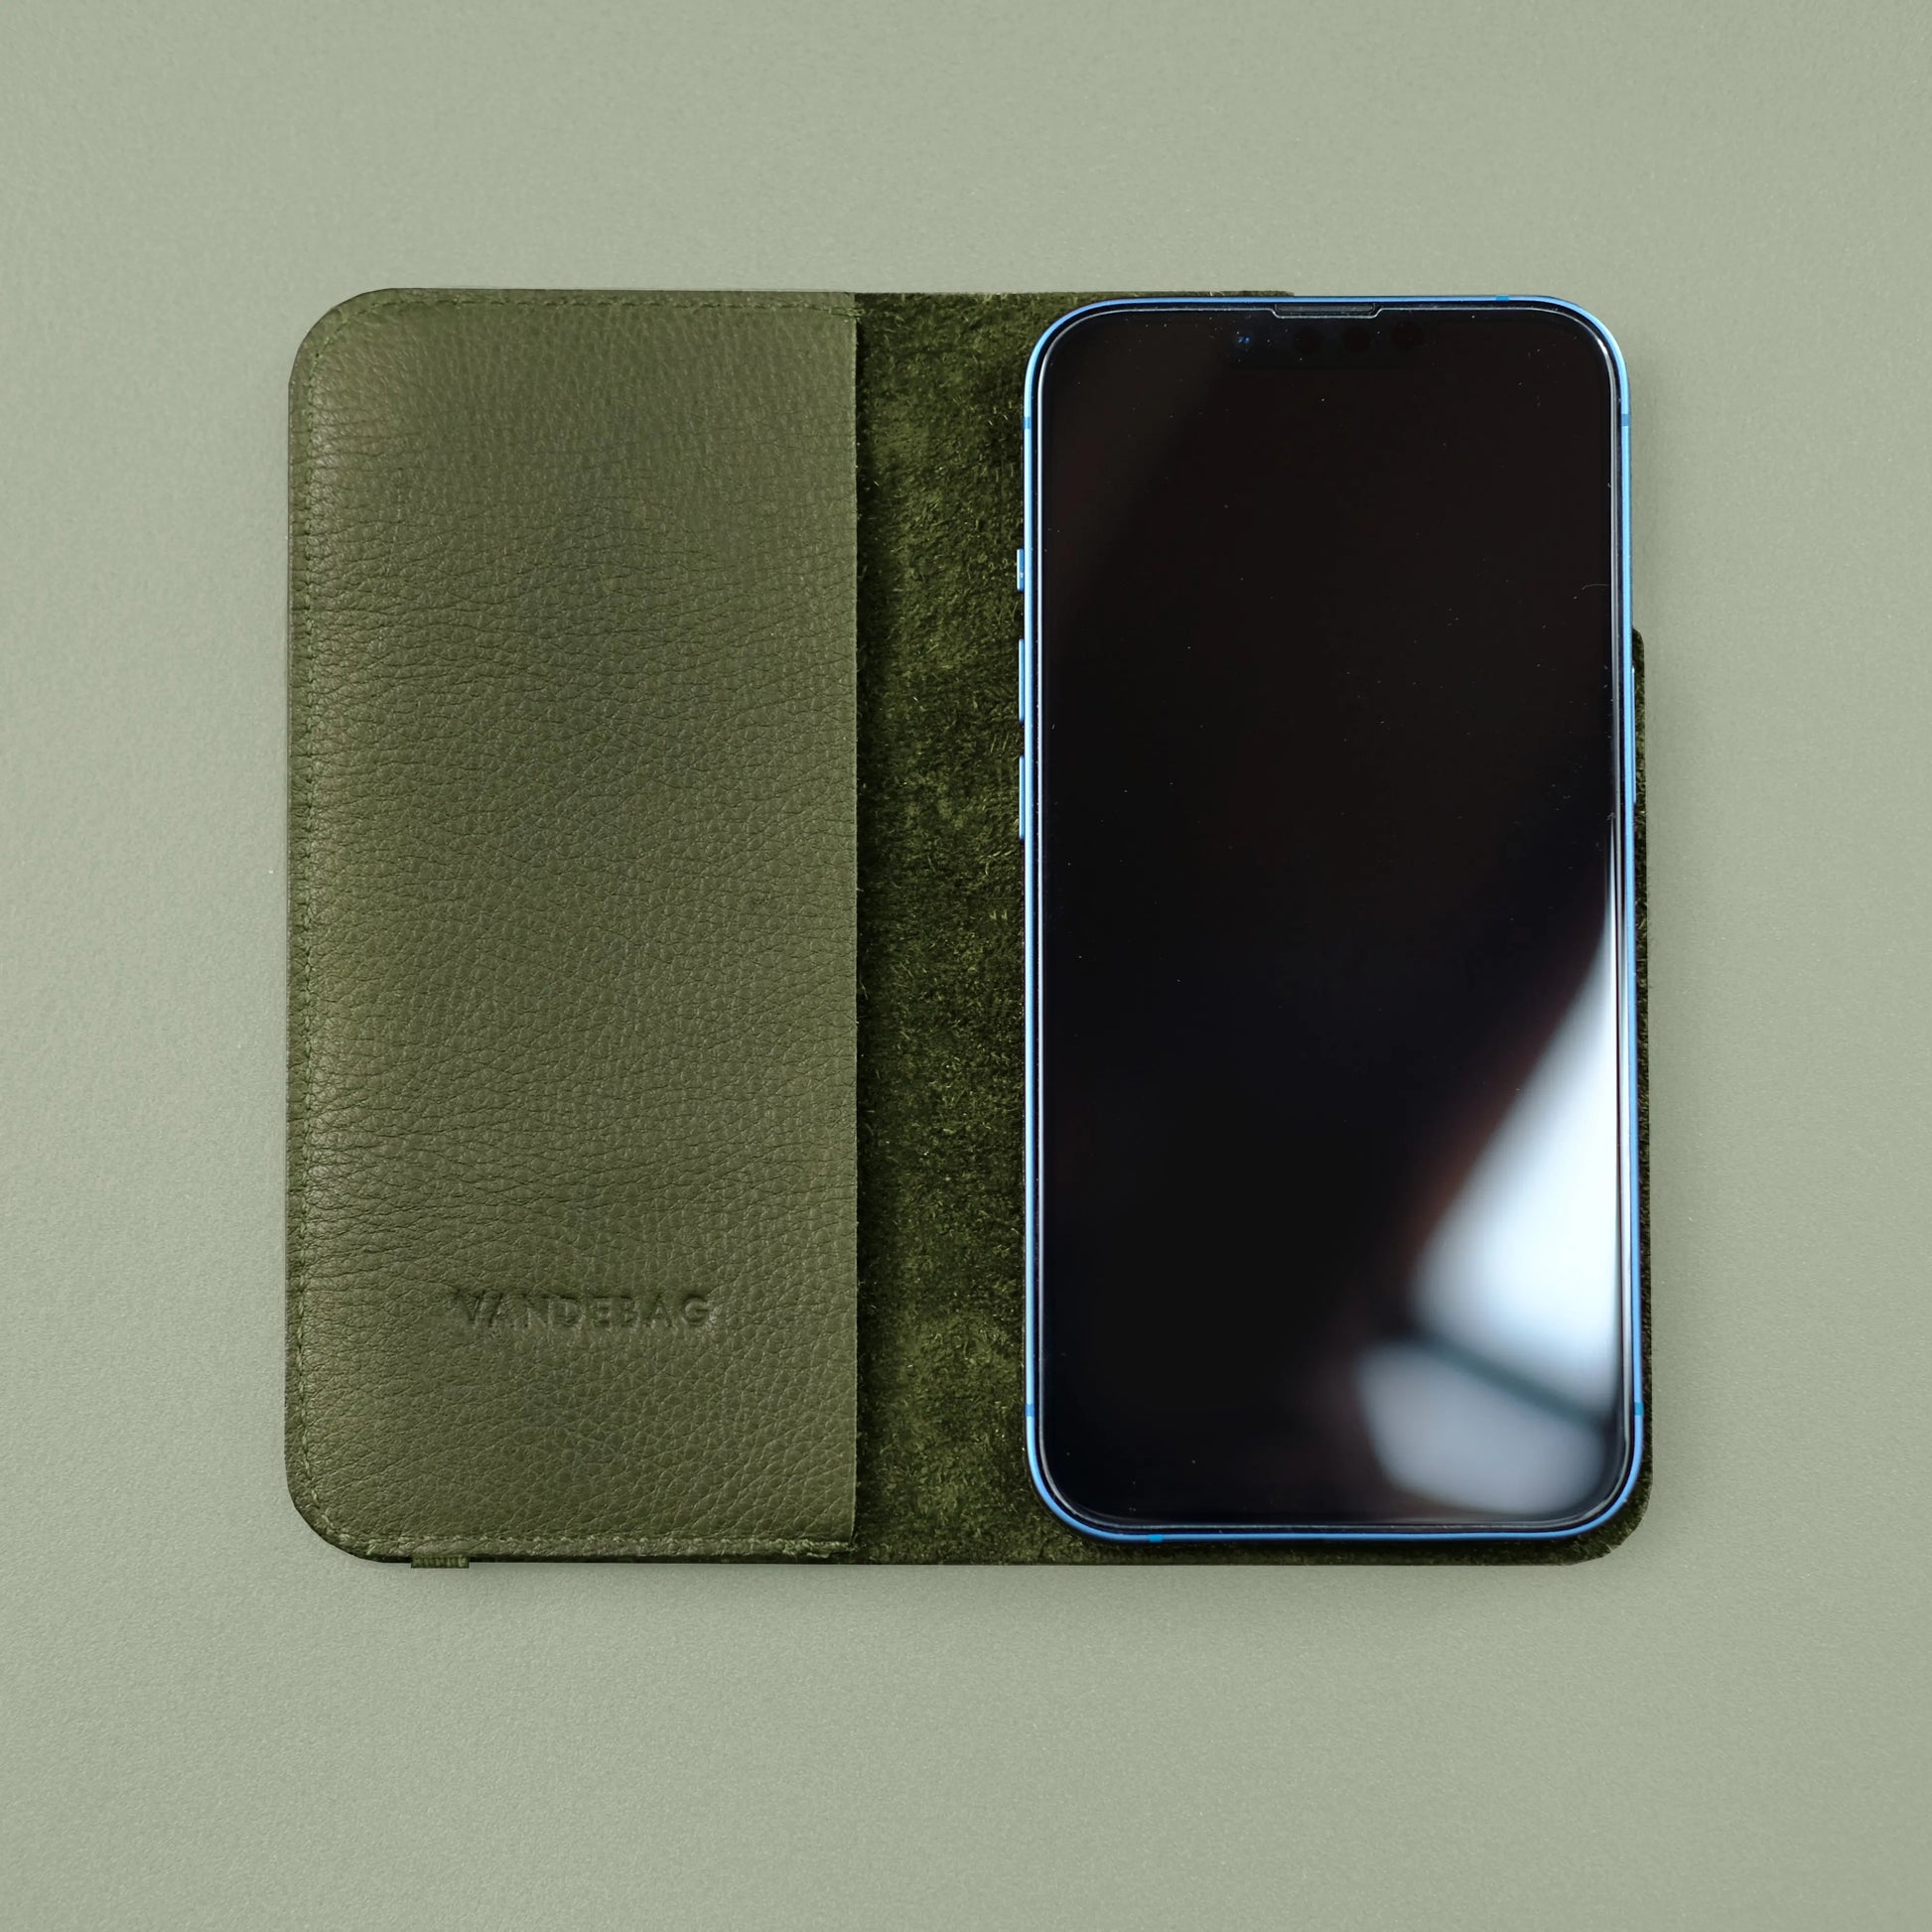 Klappcover für Handys aus khakigrünem Leder mit Vandebag Prägung